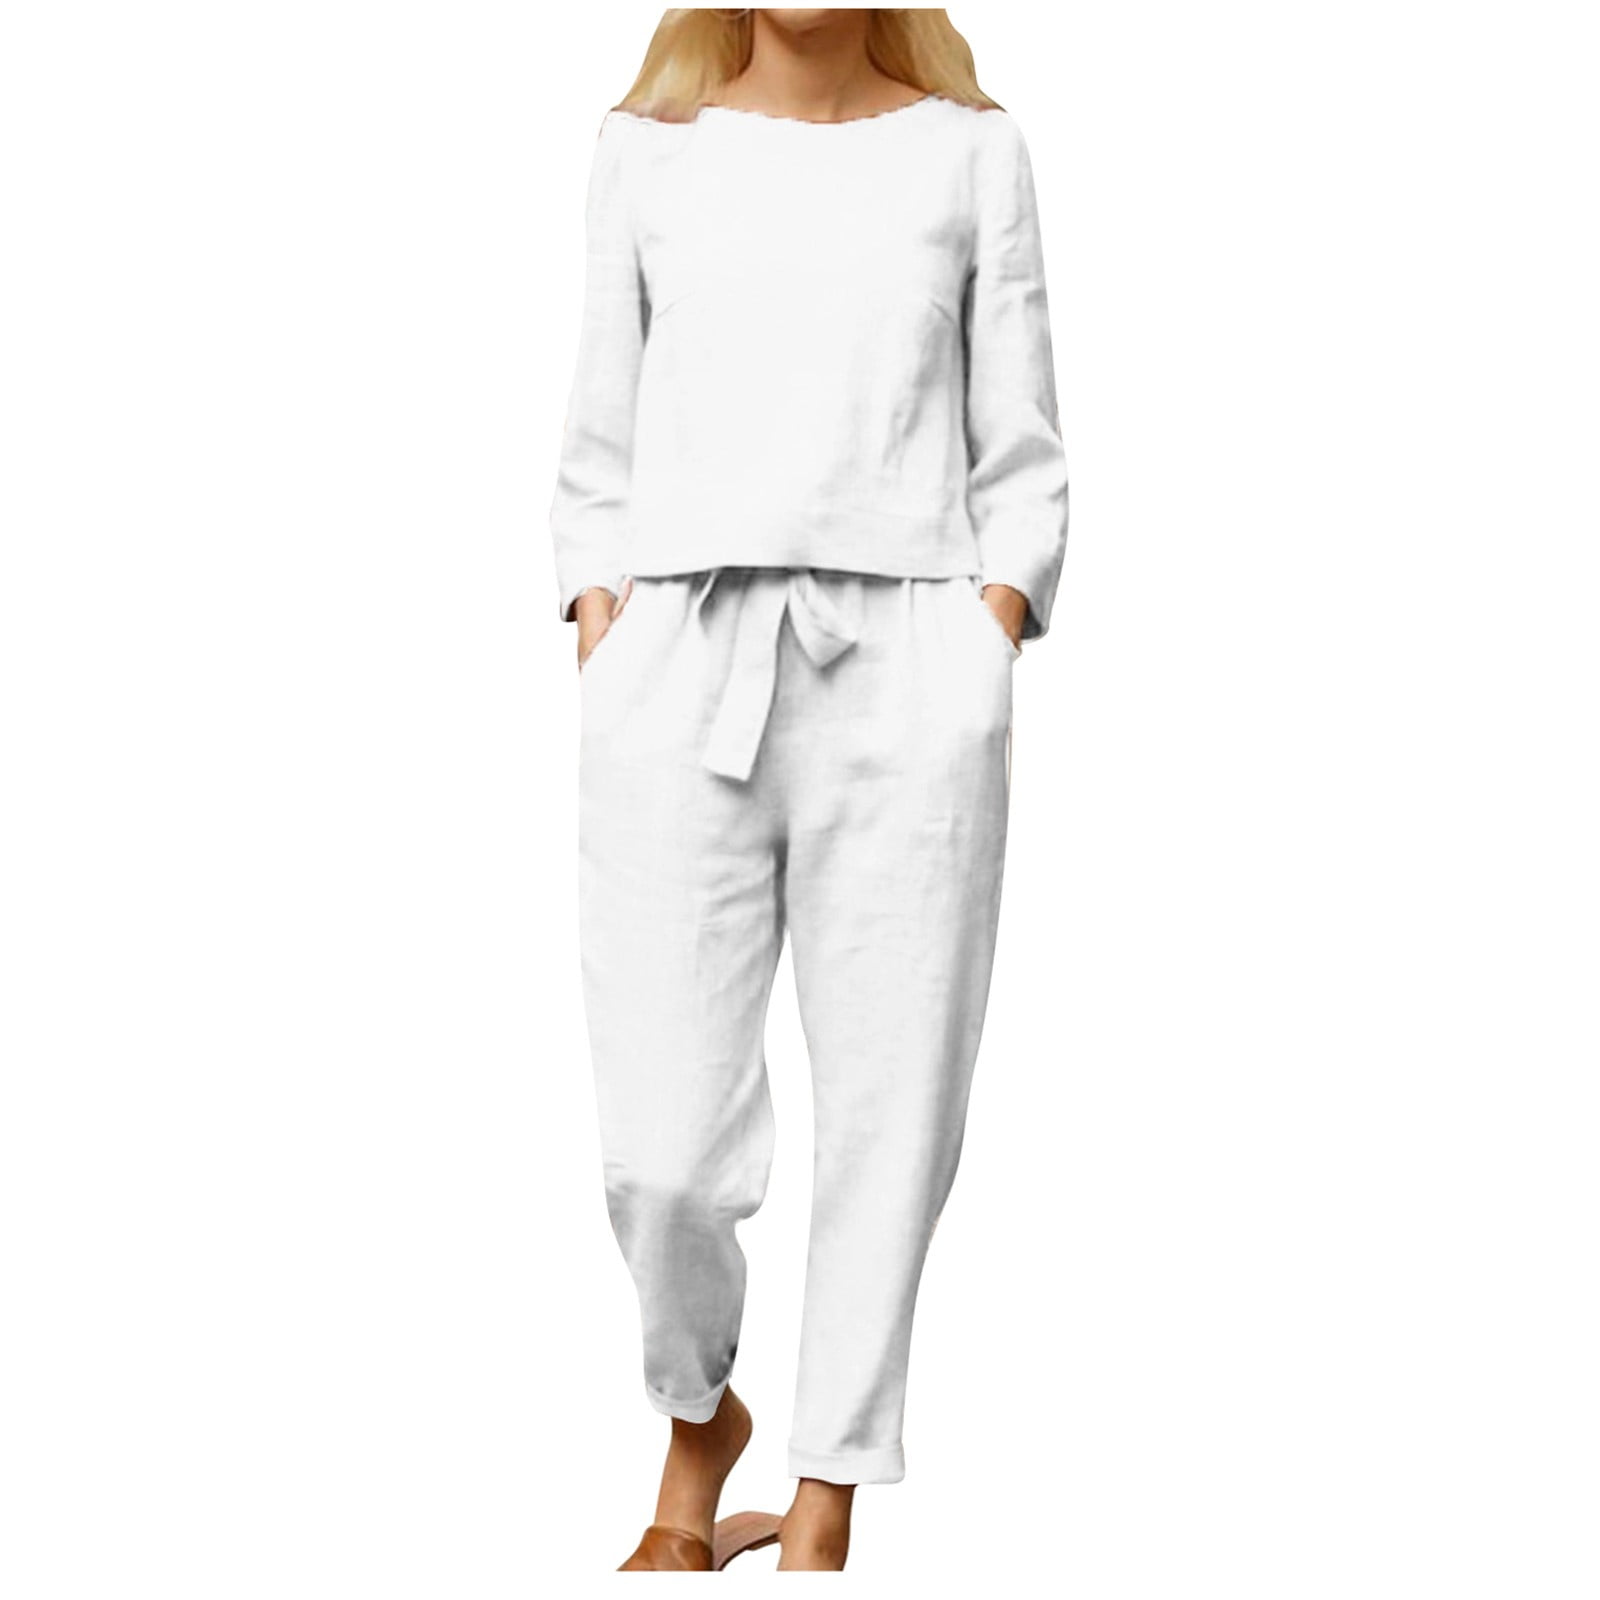 ASFGIMUJ Women's Loungewear Sets Cotton Linen Suit Comfortable Lace-Up ...